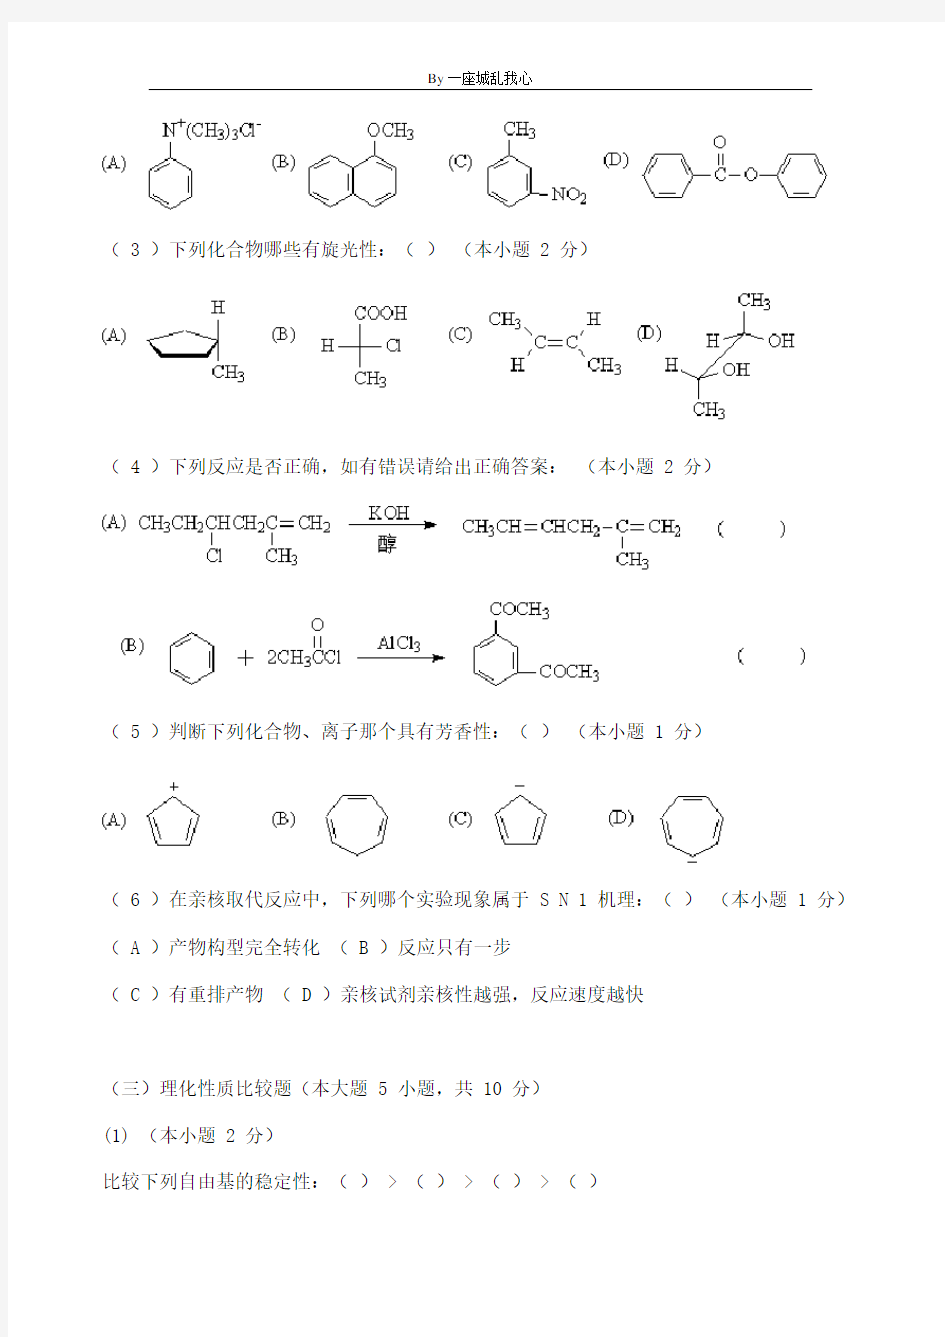 天津大学有机化学第_1_学期期末考试试题